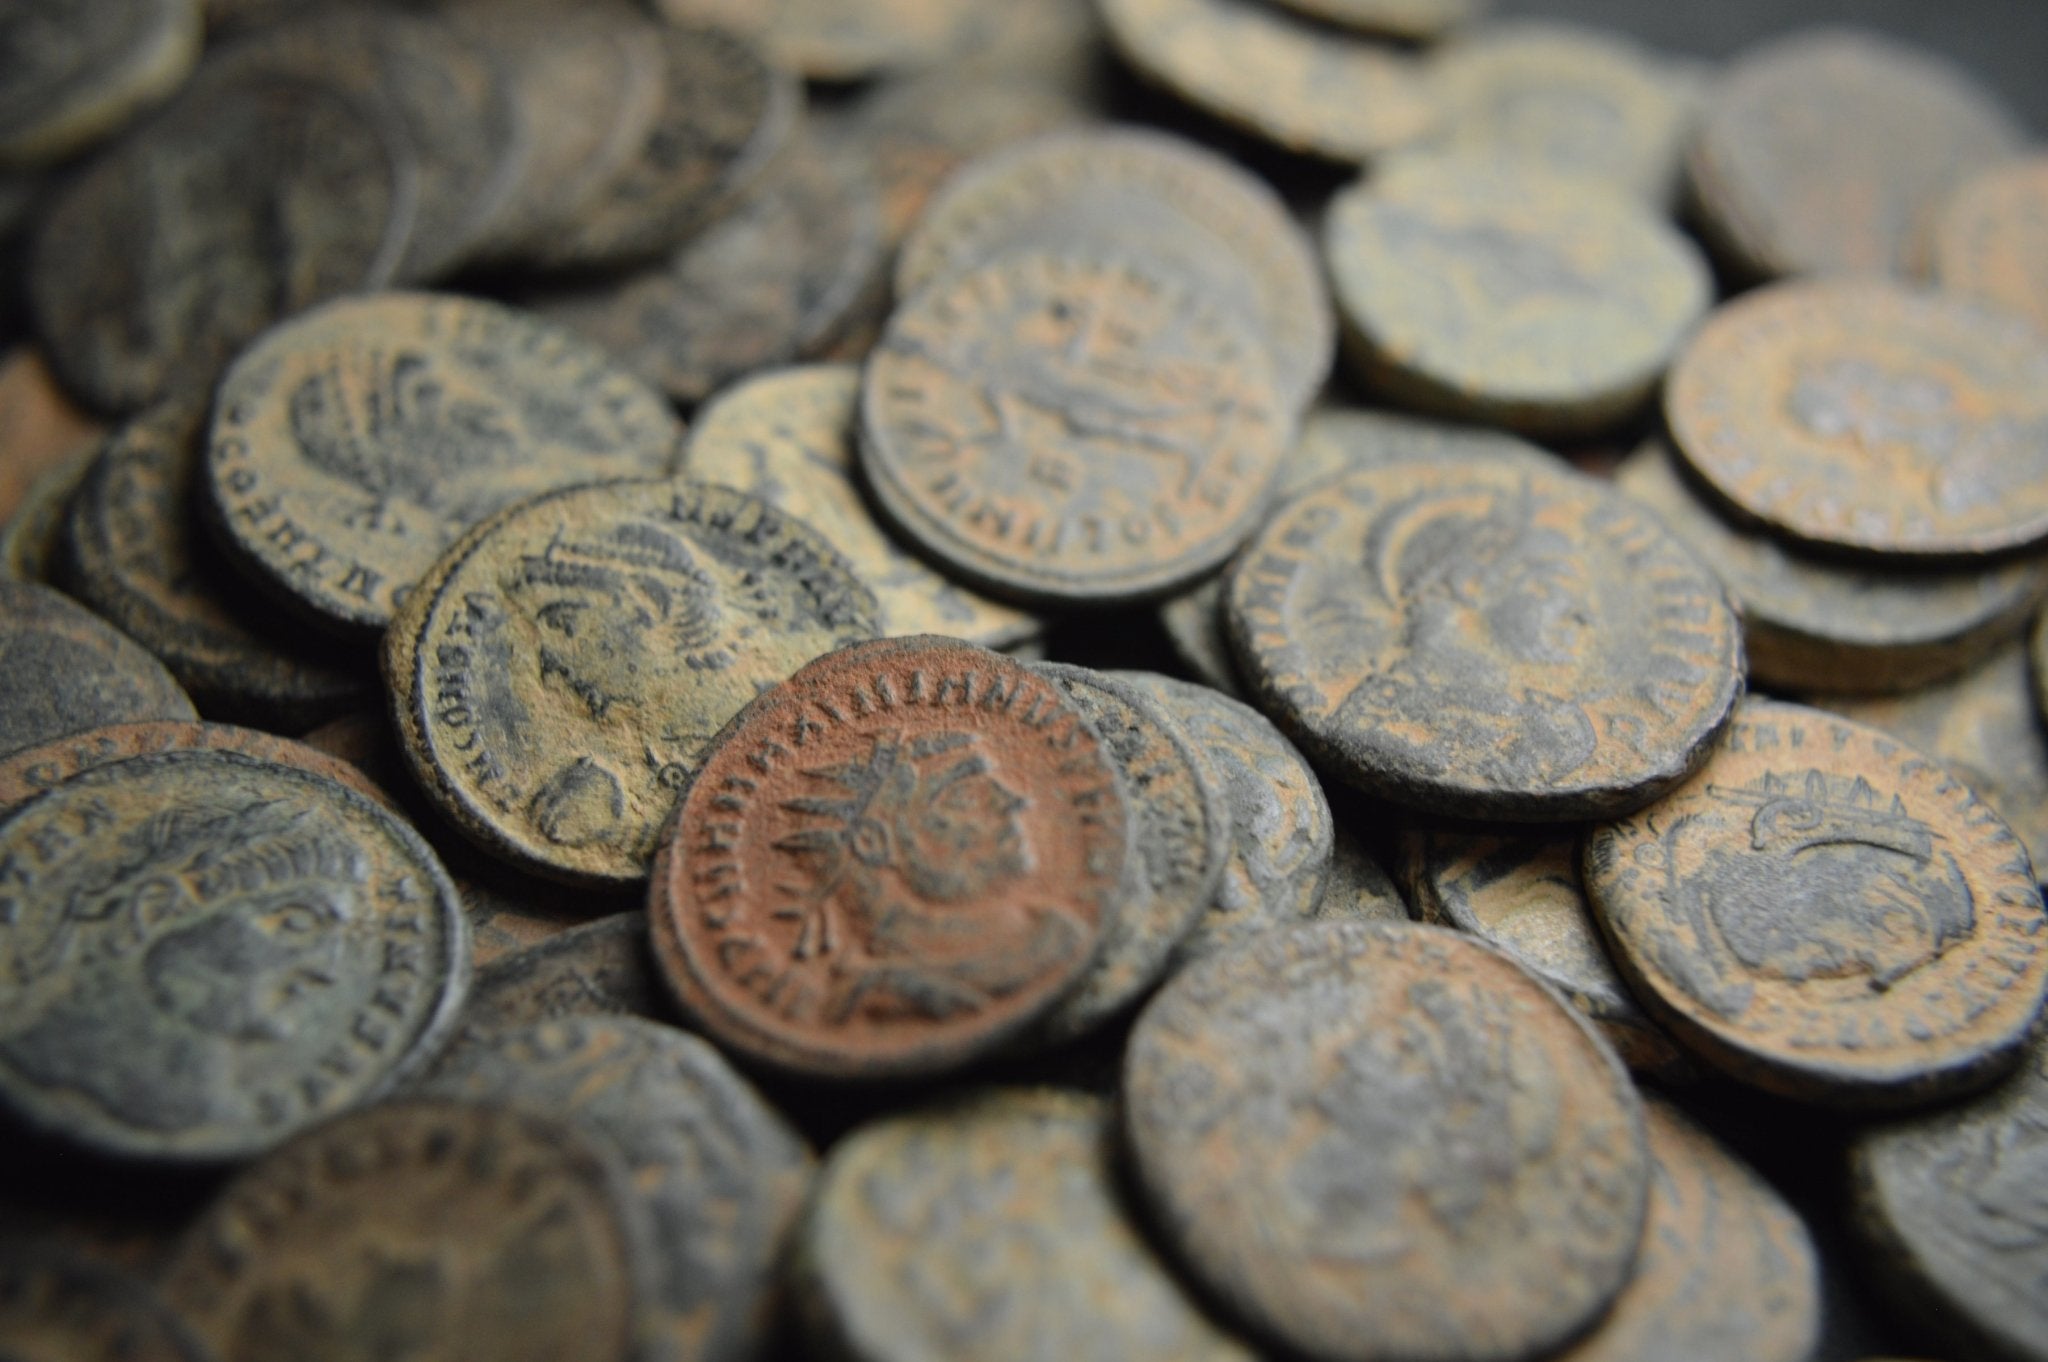 Roman Bronze Coins - Premium Ancient Coins